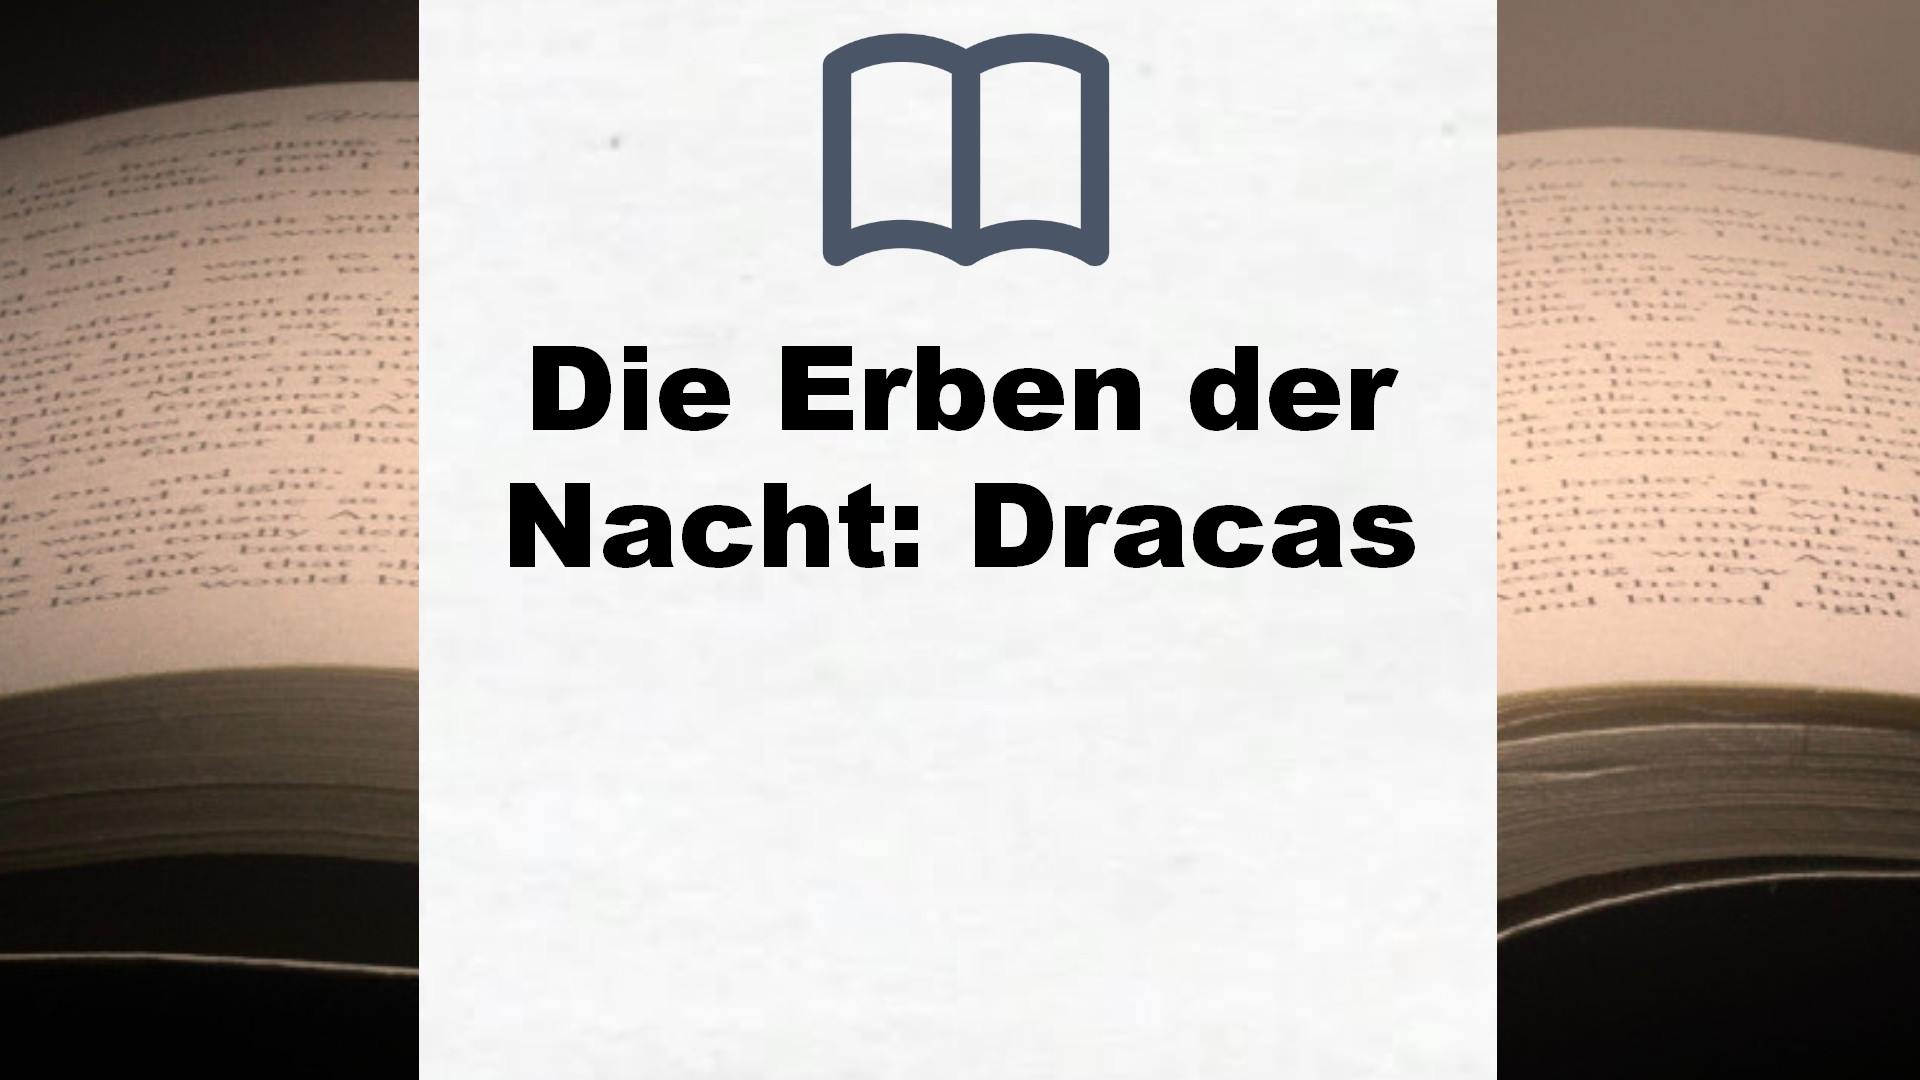 Die Erben der Nacht: Dracas – Buchrezension